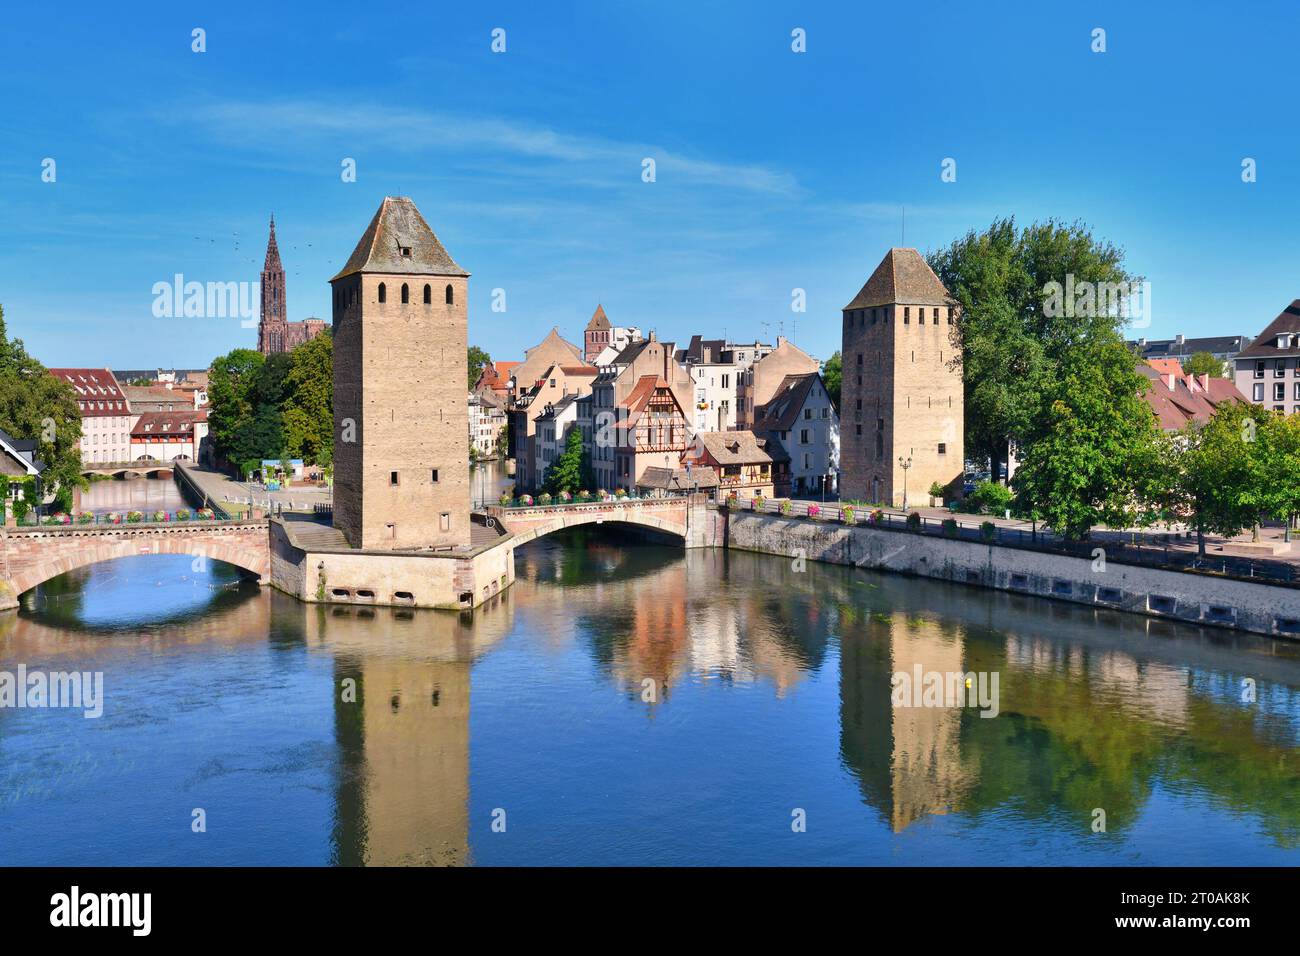 Straßburg, Frankreich: Historischer Turm der Brücke Ponts Couvert als Teil der Verteidigungsarbeiten, die im 13. Jahrhundert auf dem Ill in Petite Fra errichtet wurden Stockfoto